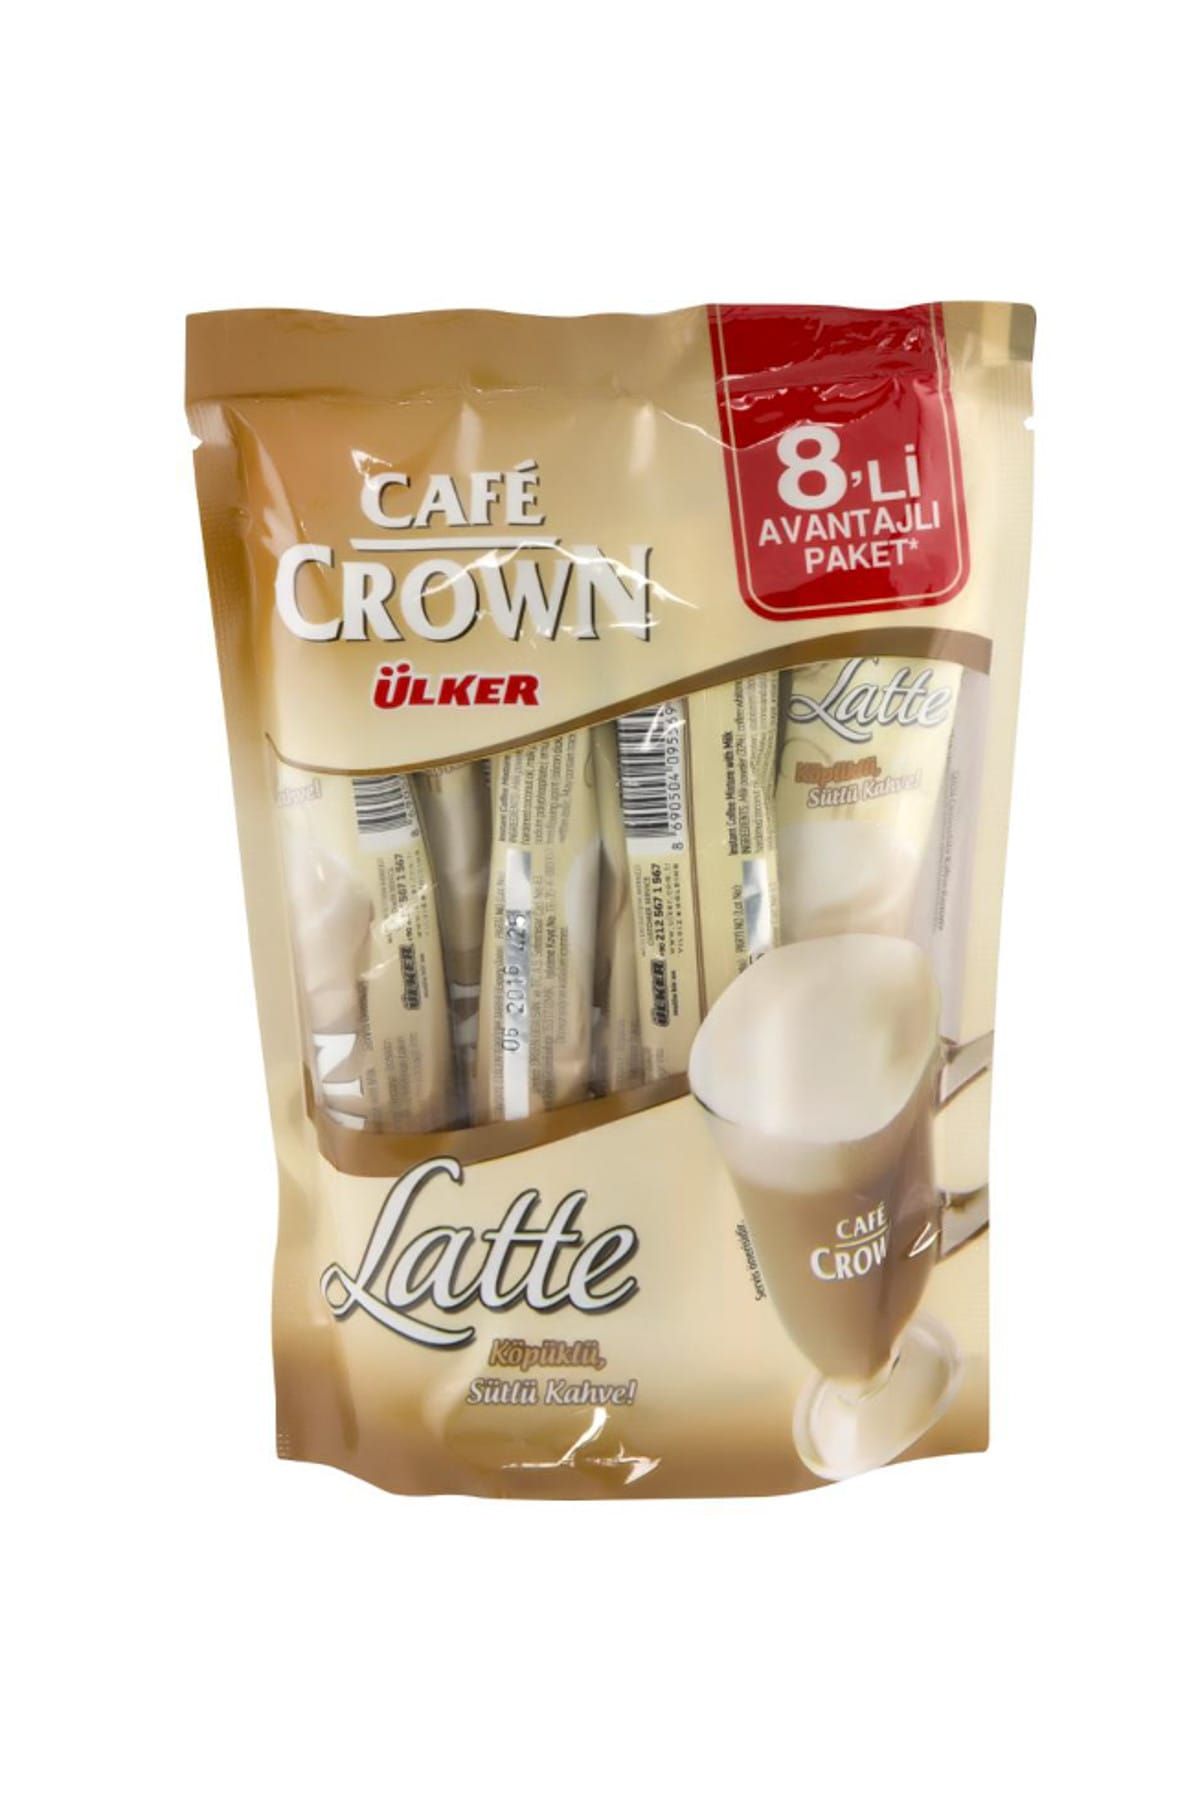 Cafe Crown Latte Kahve 17 gr